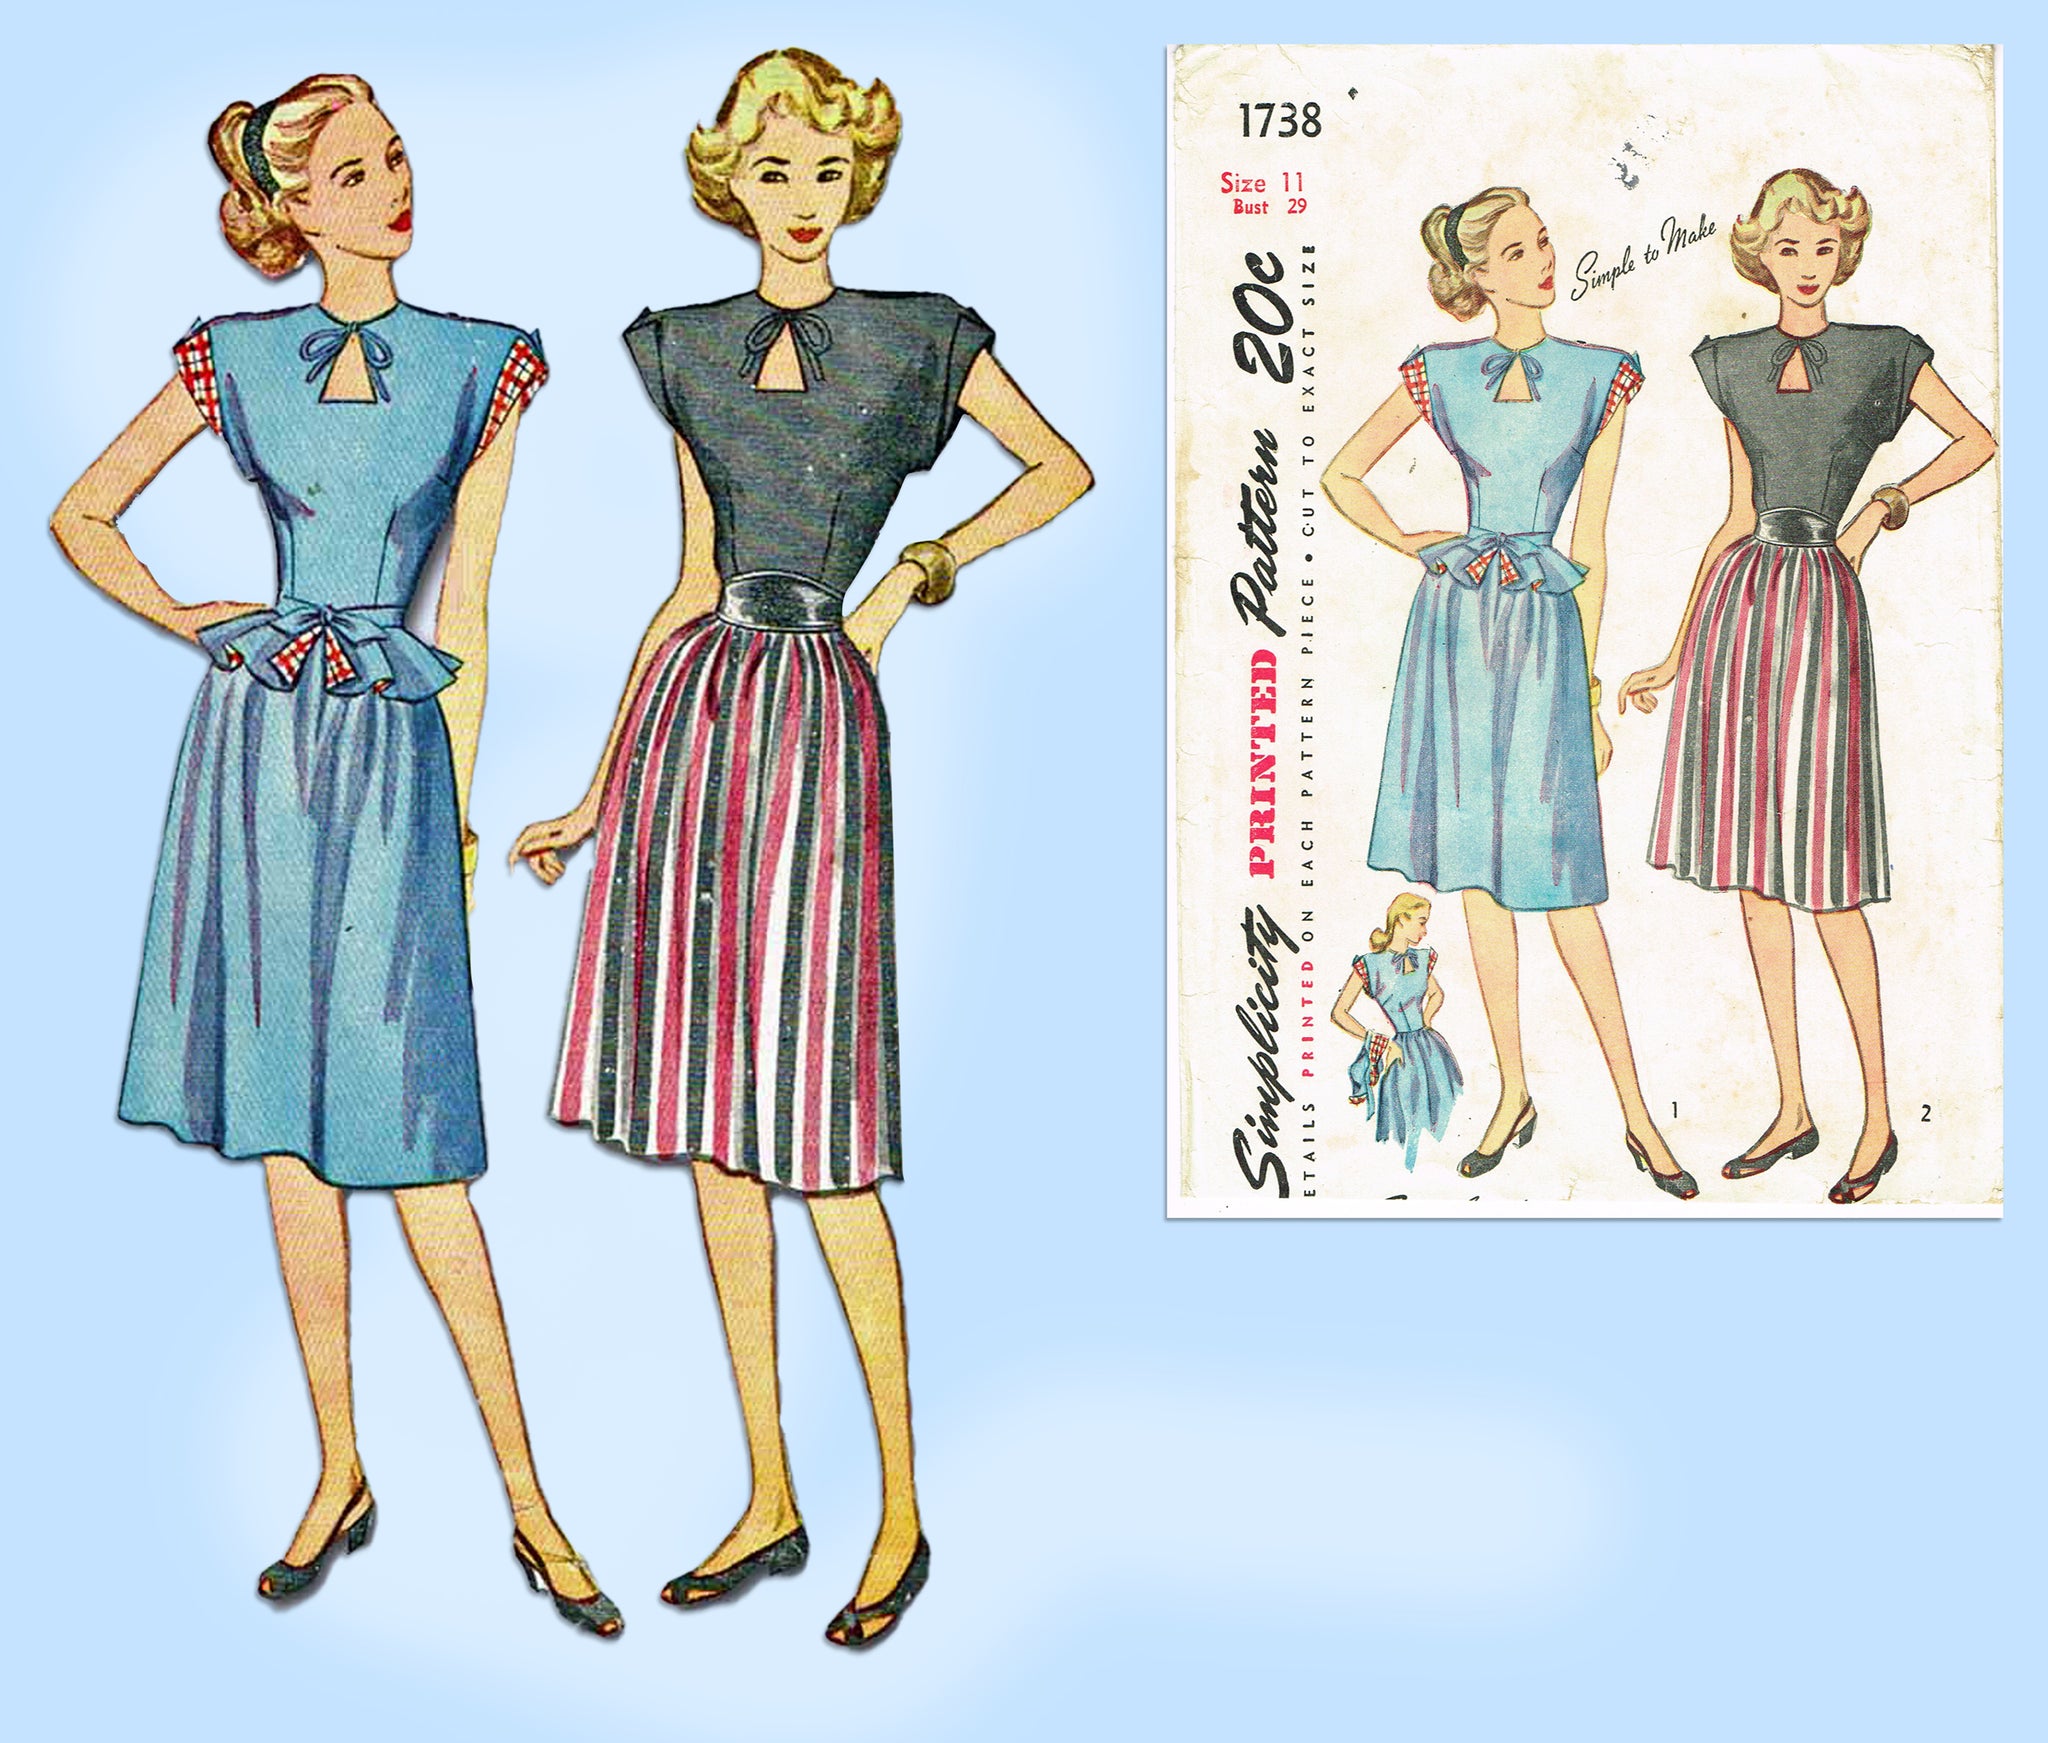 Simplicity 6293 vintage 1974 sewing pattern misses pant suit size 14 UNCUT